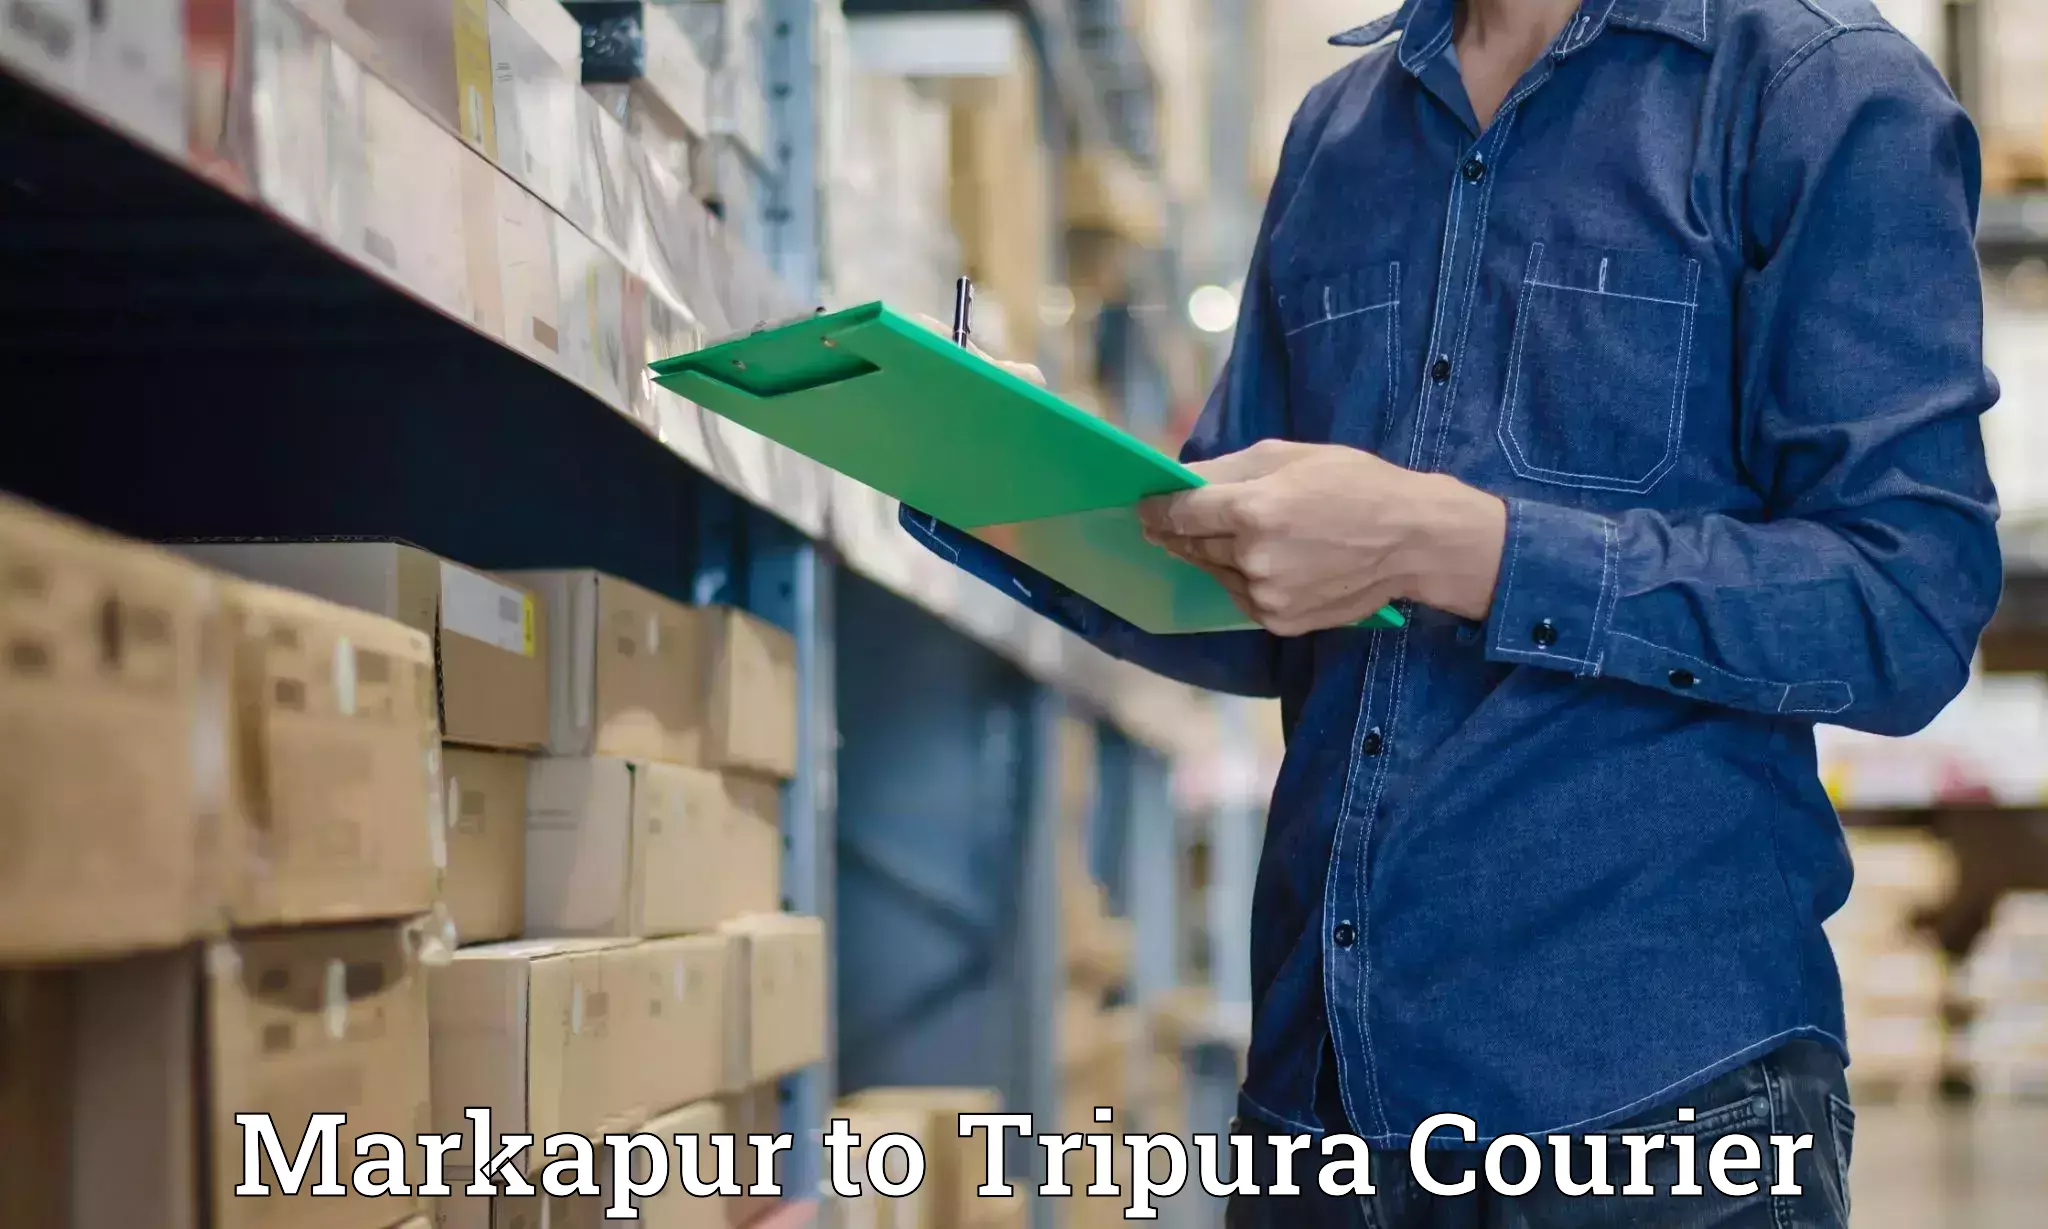 Courier service comparison Markapur to Ambassa